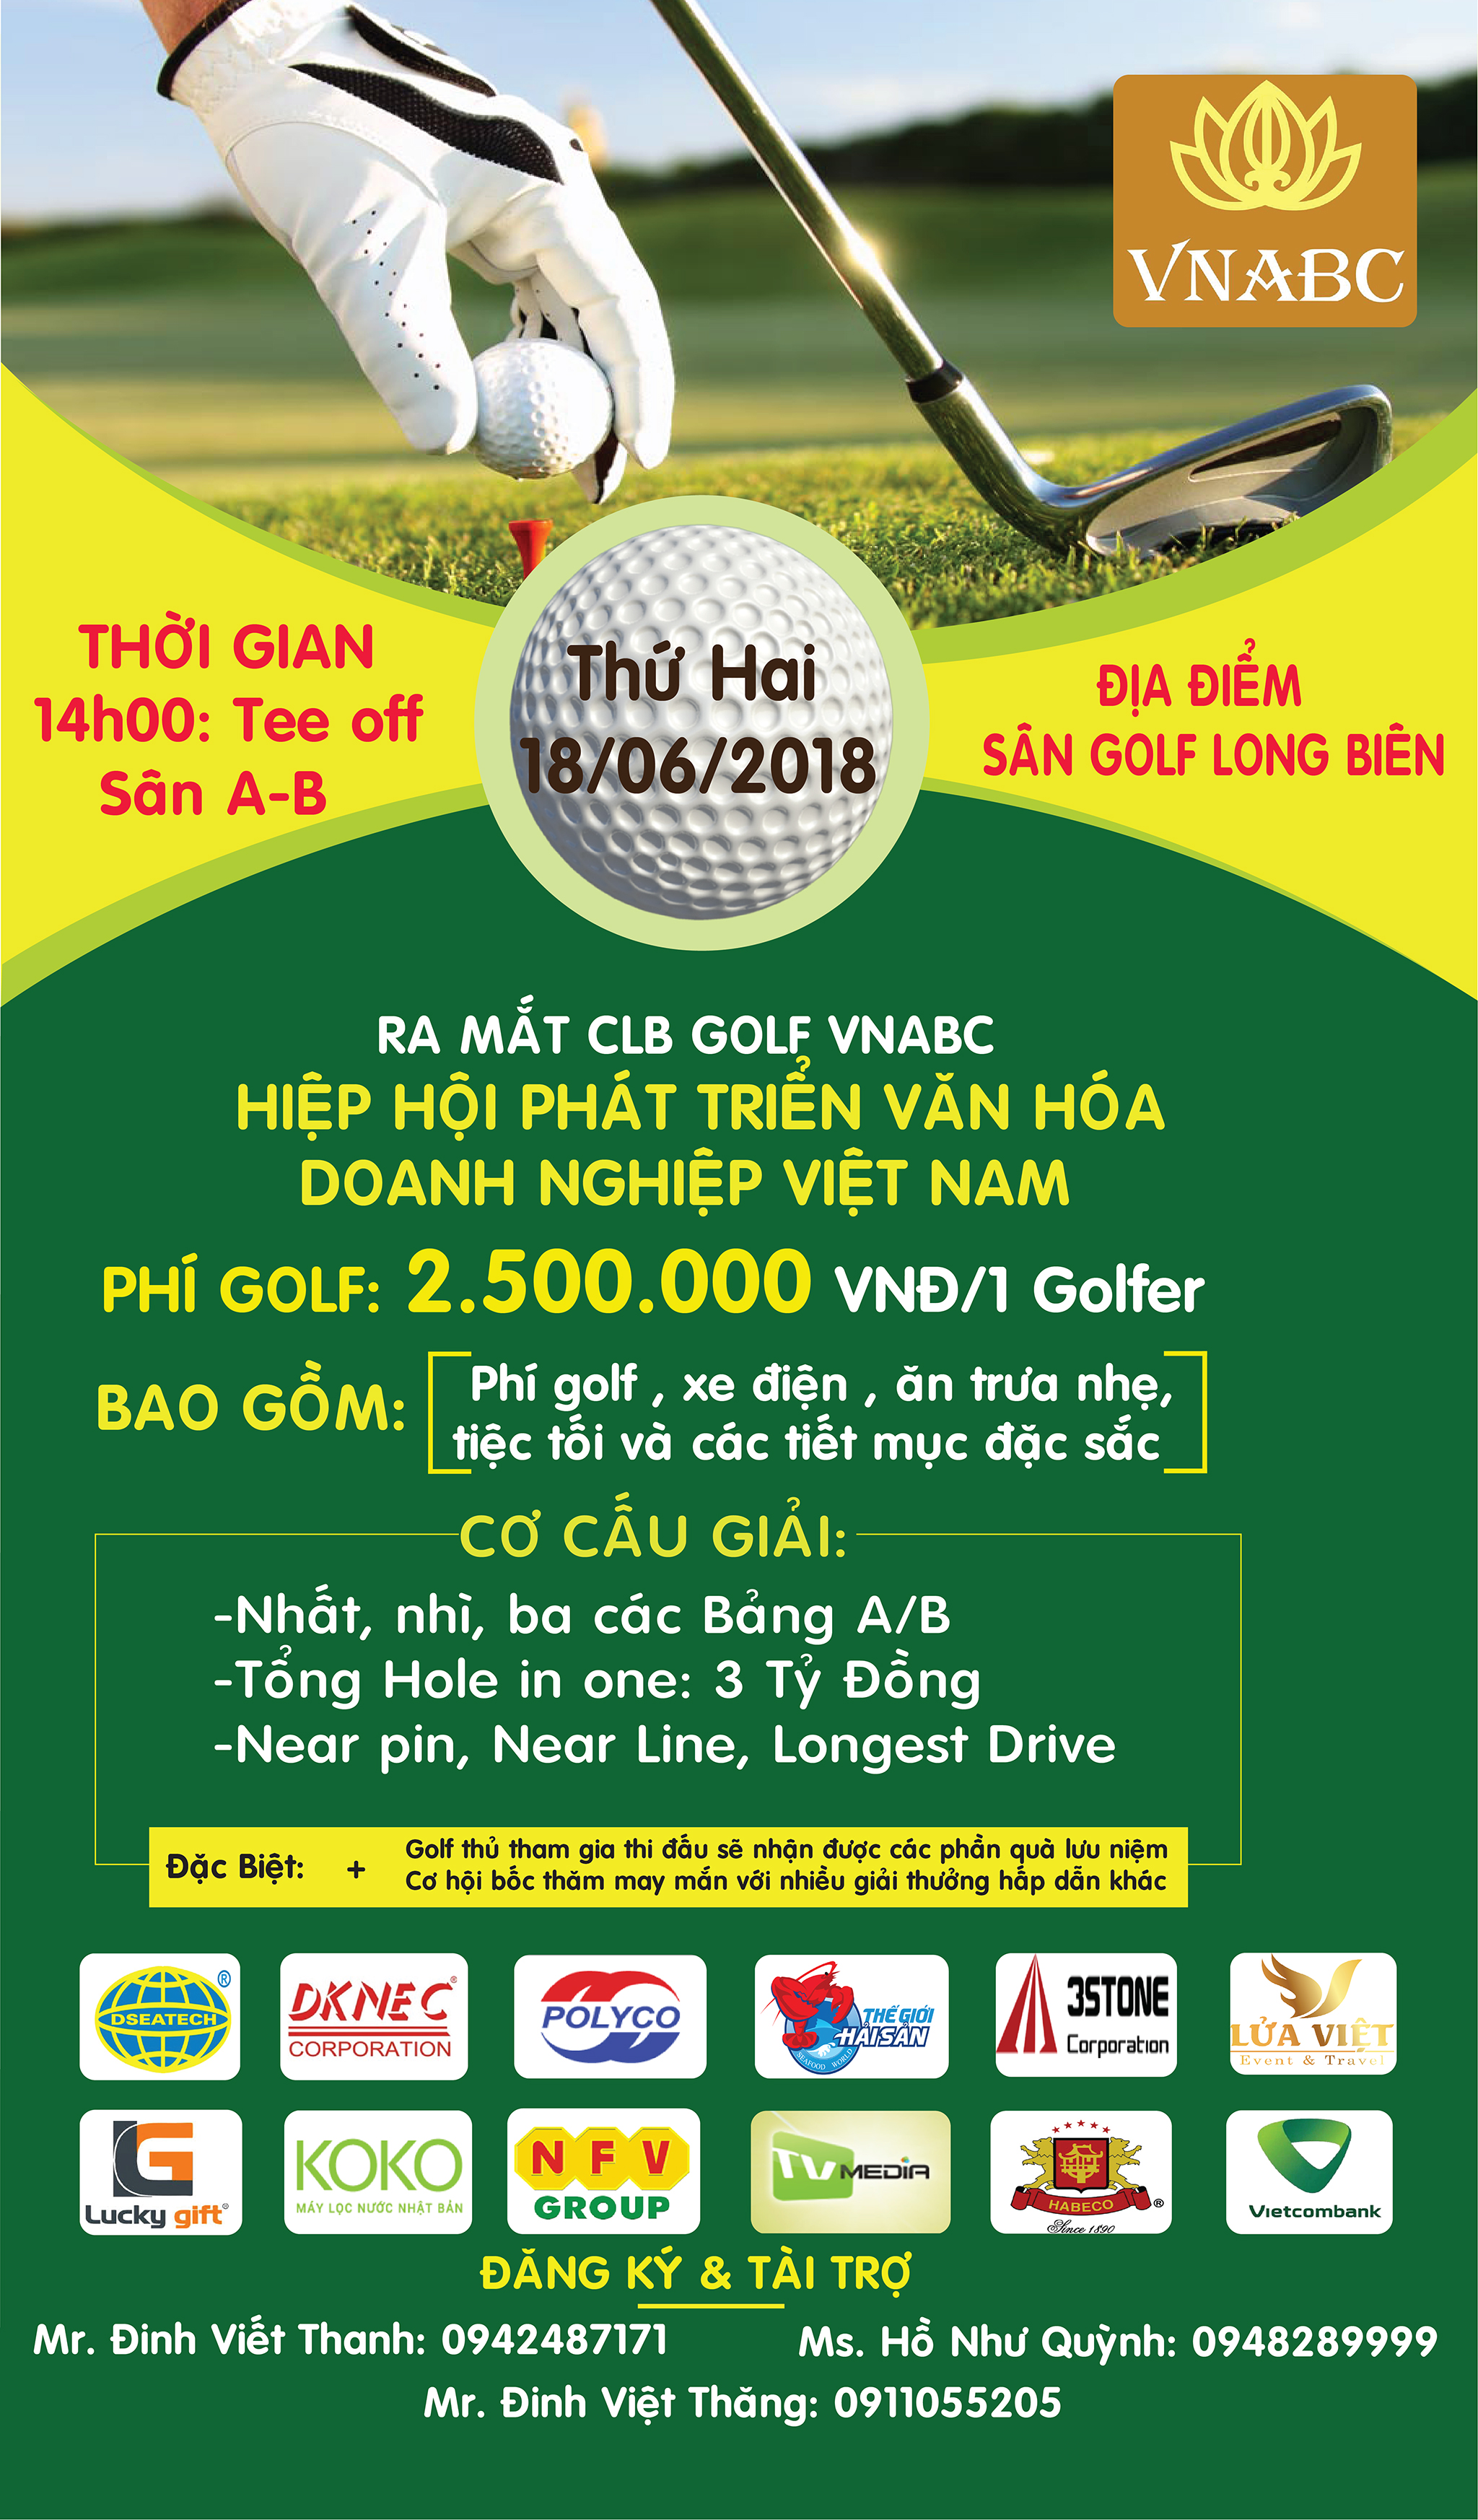 Hiệp hội phát triển Văn hóa Doanh nghiệp Việt Nam ra mắt CLB Golf VNABC